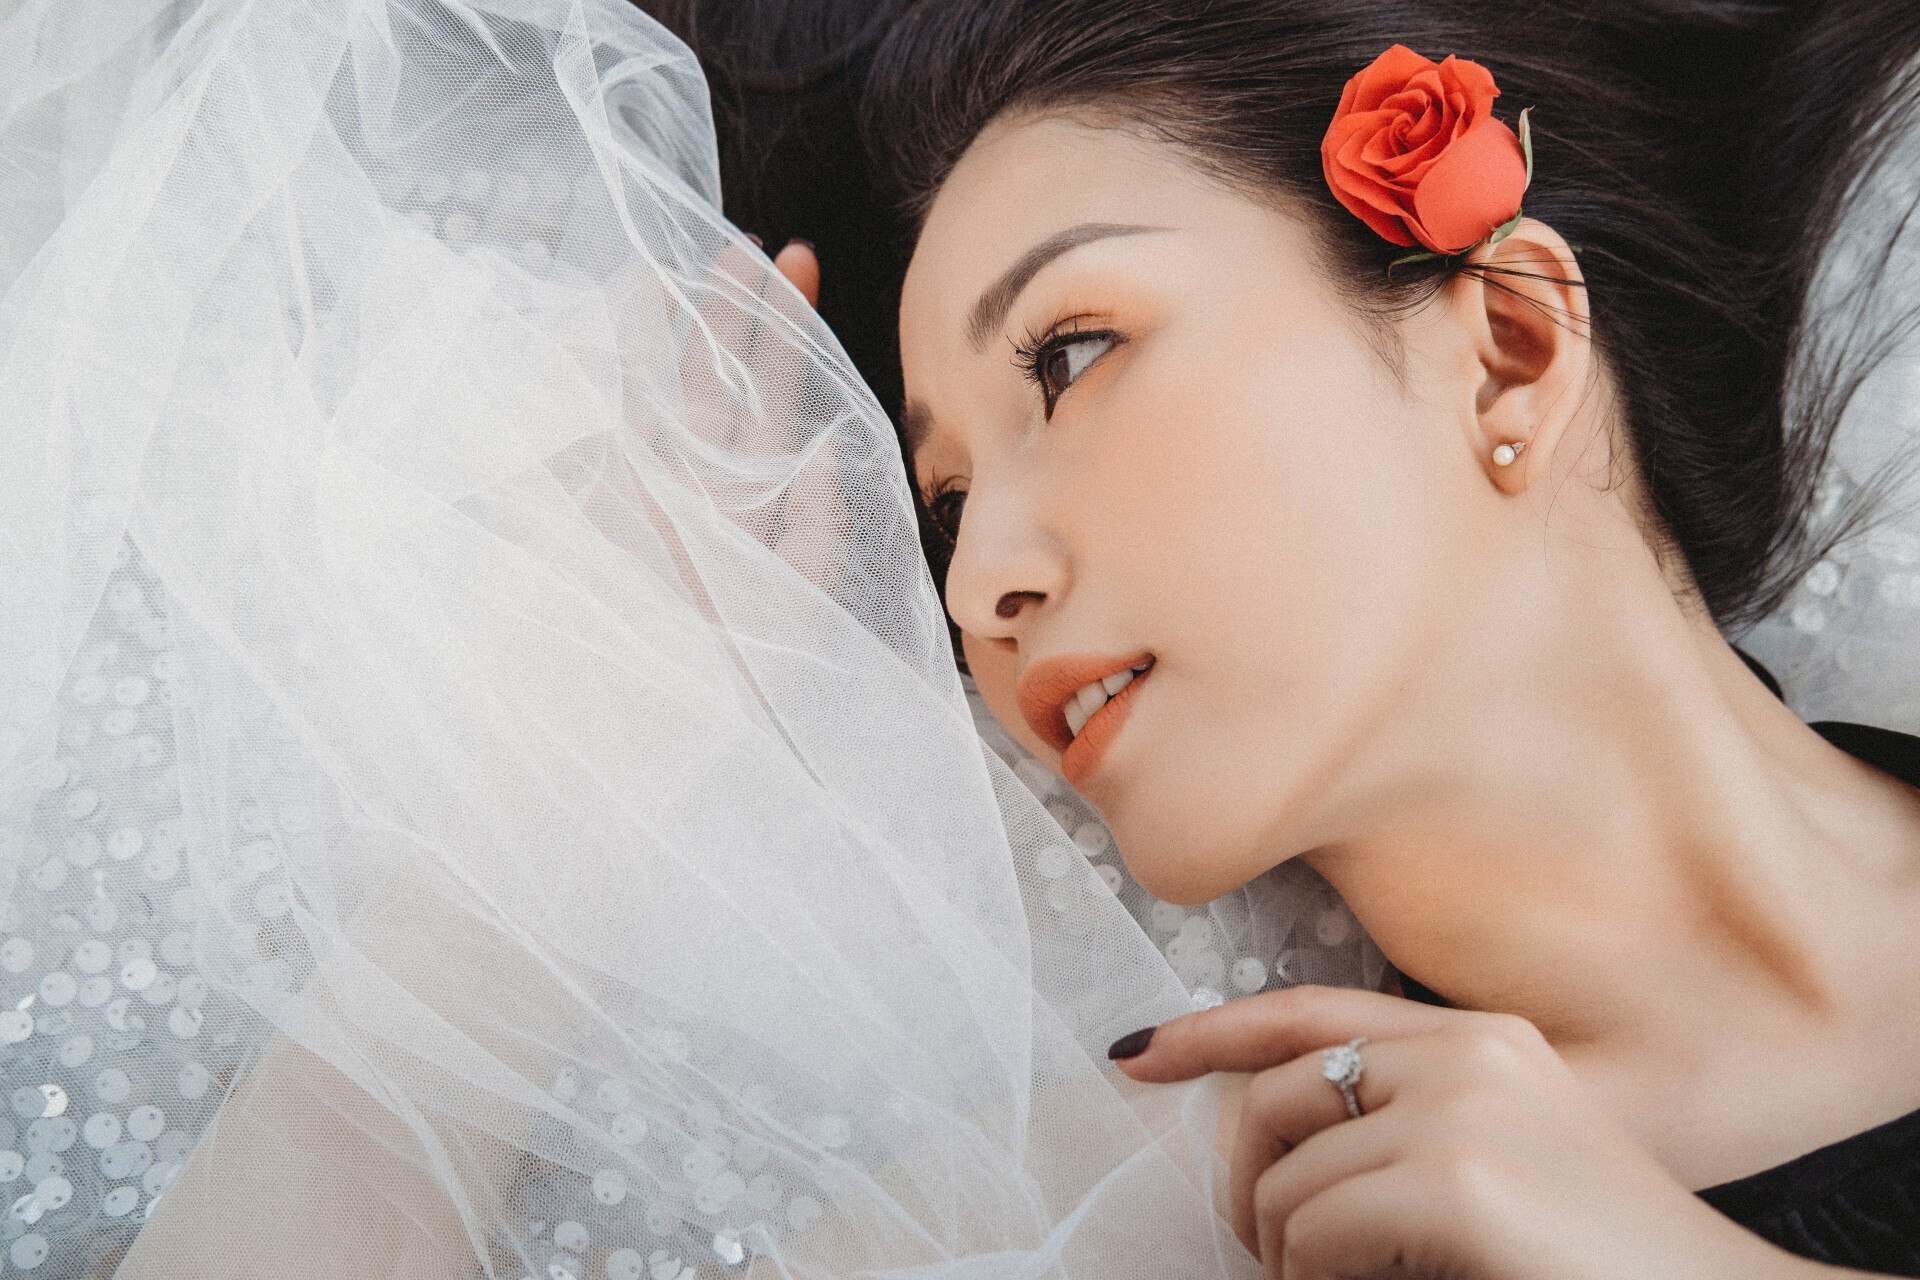 Asian Brides Magazine – Beauty And Harmony